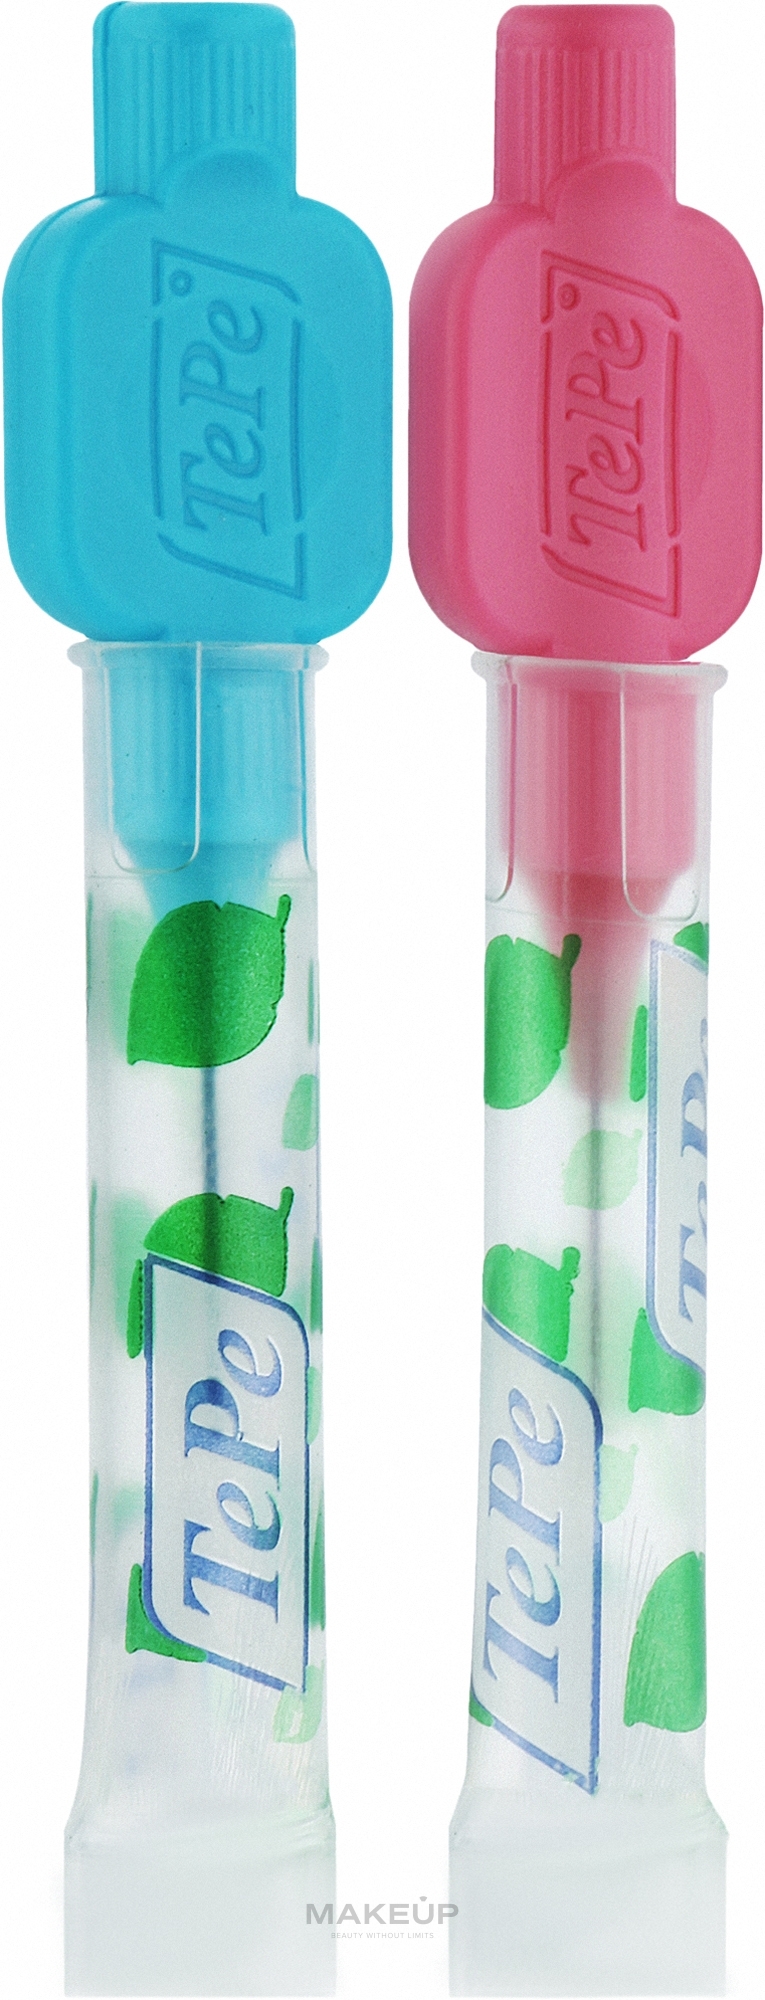 Zestaw szczoteczek międzyzębowych 0,4 mm + 0,6 mm - TePe Interdental Normal Brushes — Zdjęcie 2 szt.